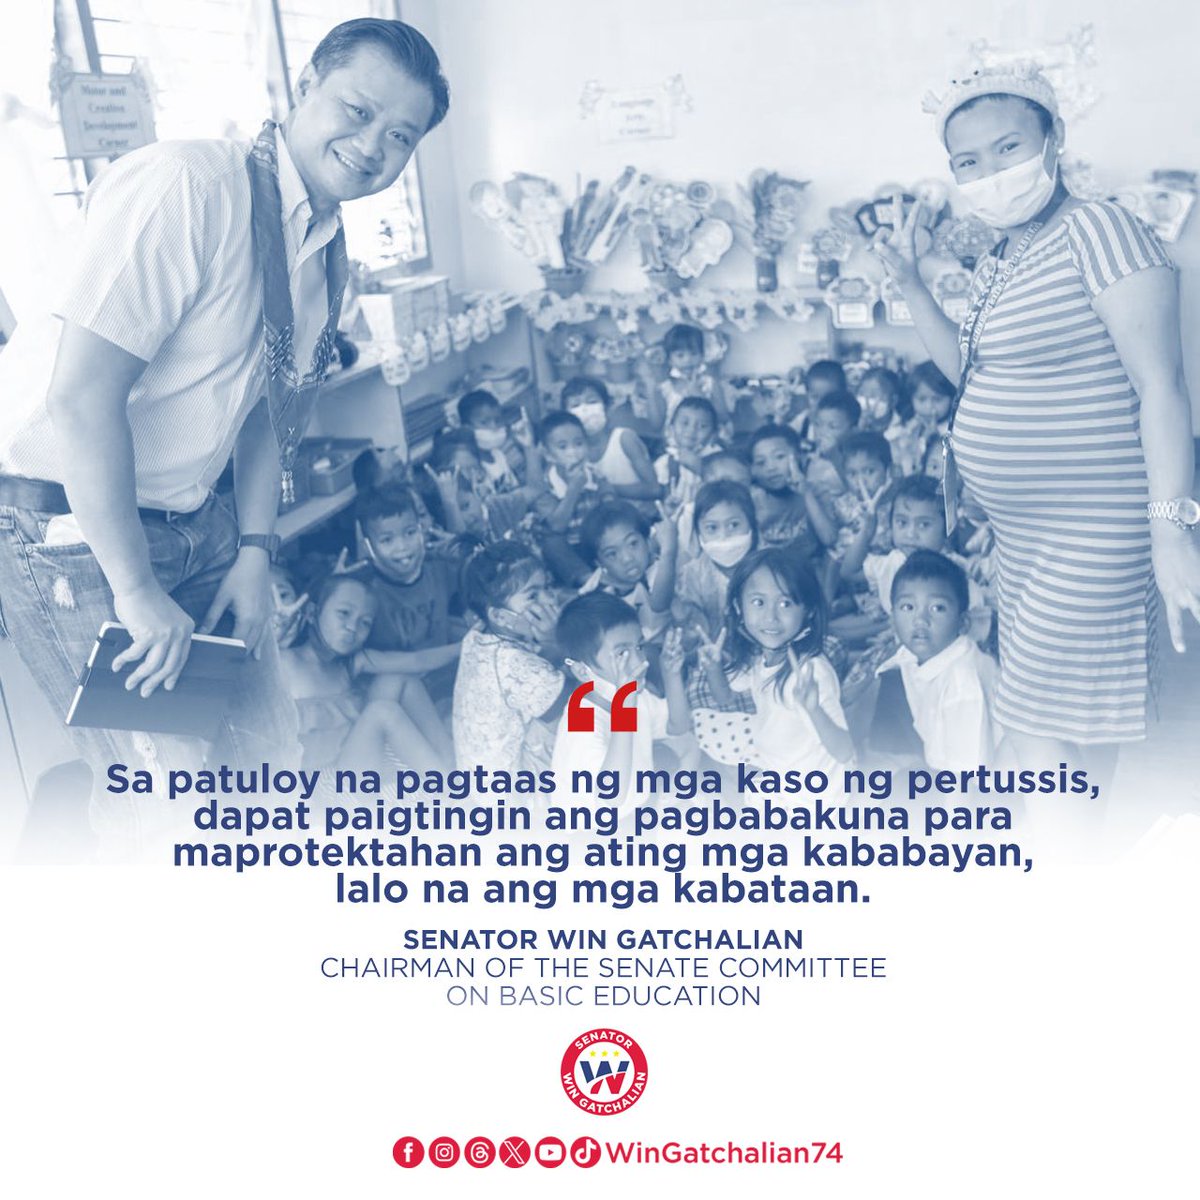 Prayoridad po natin na masiguro na ligtas at nakakapag-aral ang mga kabataan. #WINTayongLahat